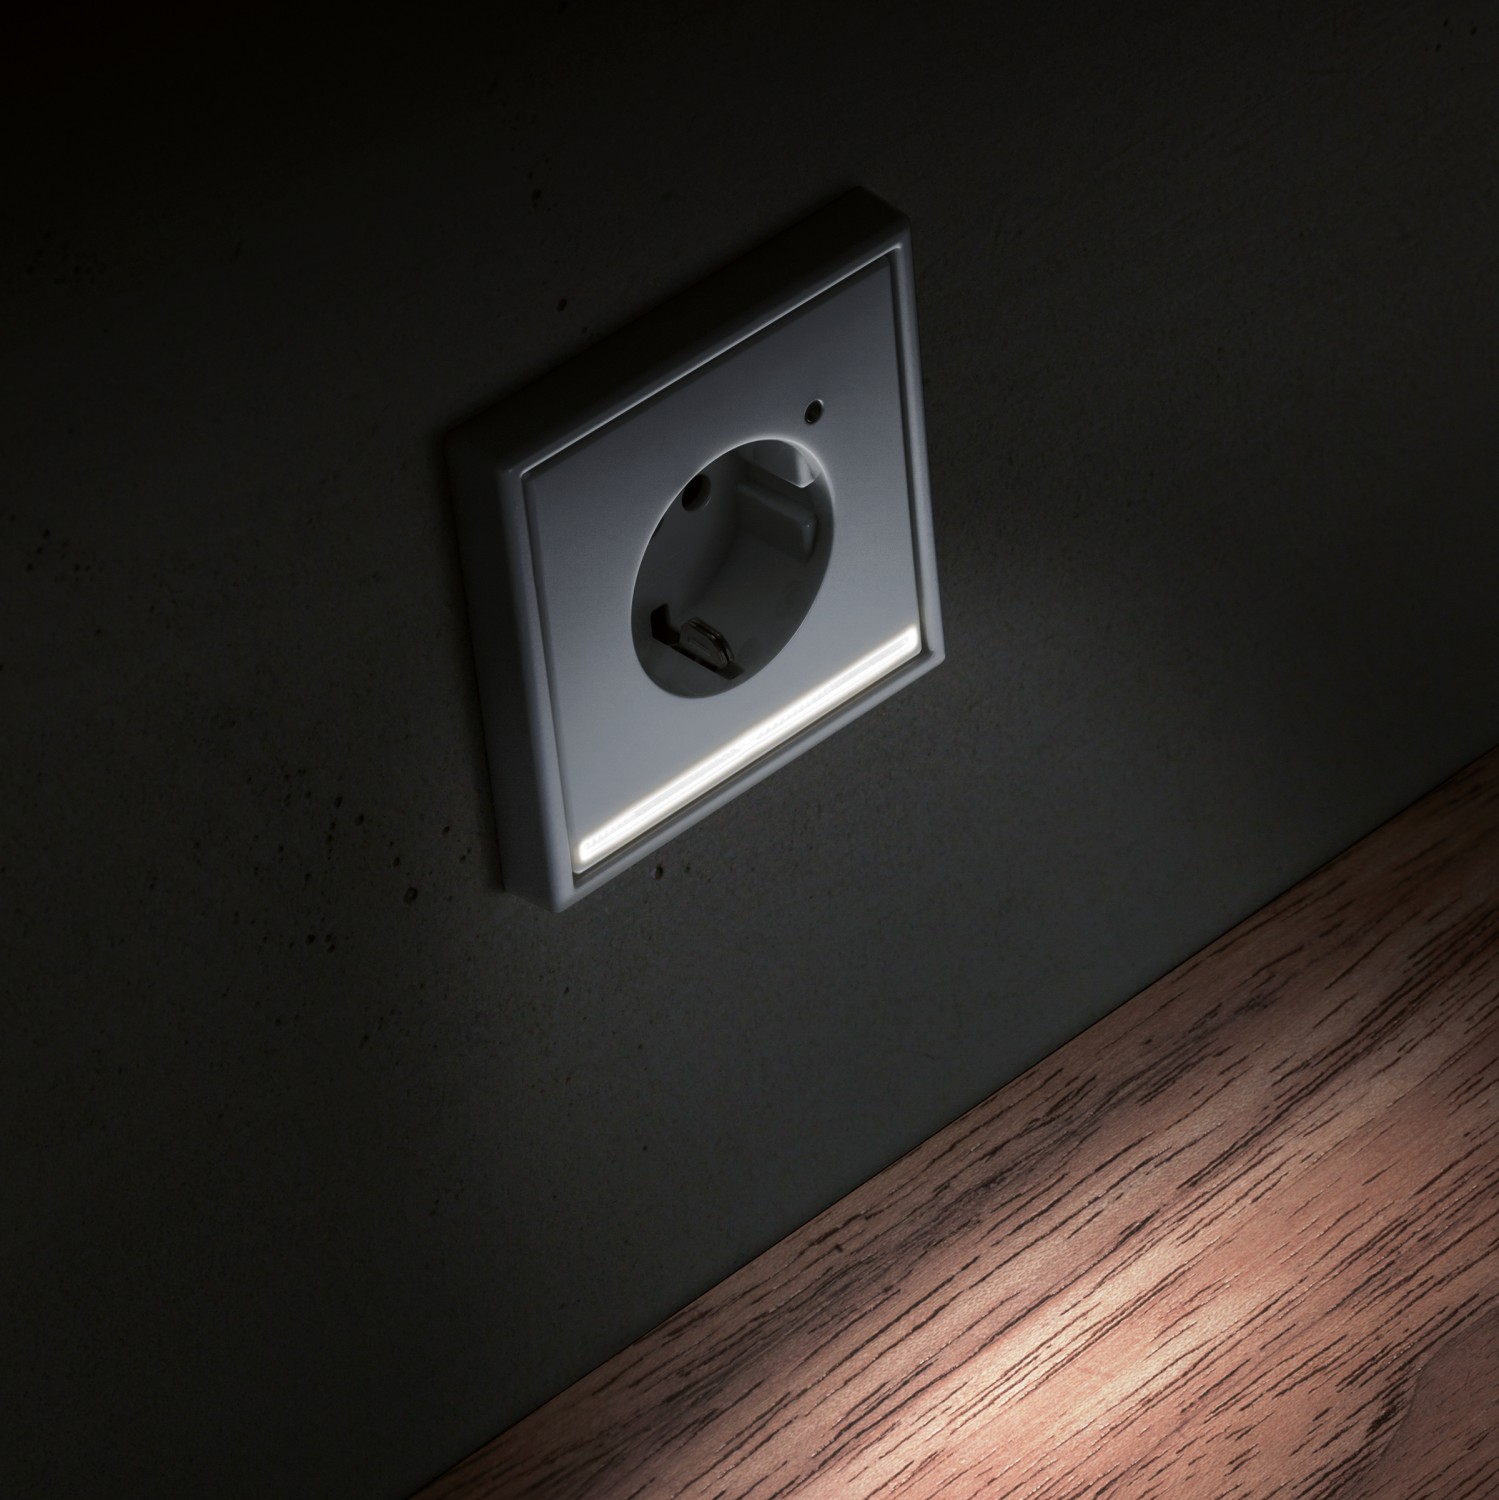 Smart Home LED-Steckdose erleichtert Orientierung im Dunkeln - Definierter Lichtkegel nach unten - News, Bild 1